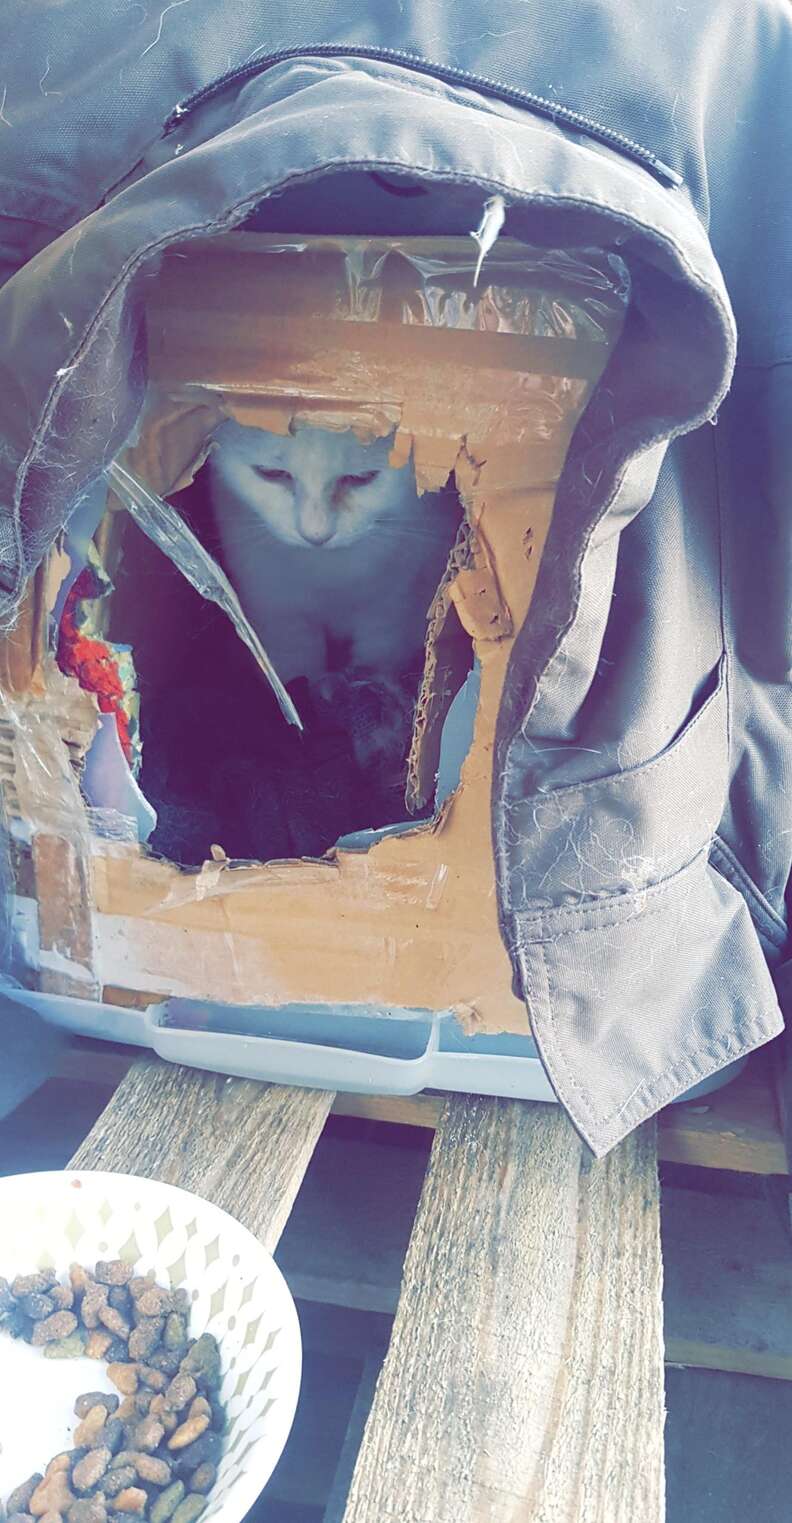 cat found in cardboard box